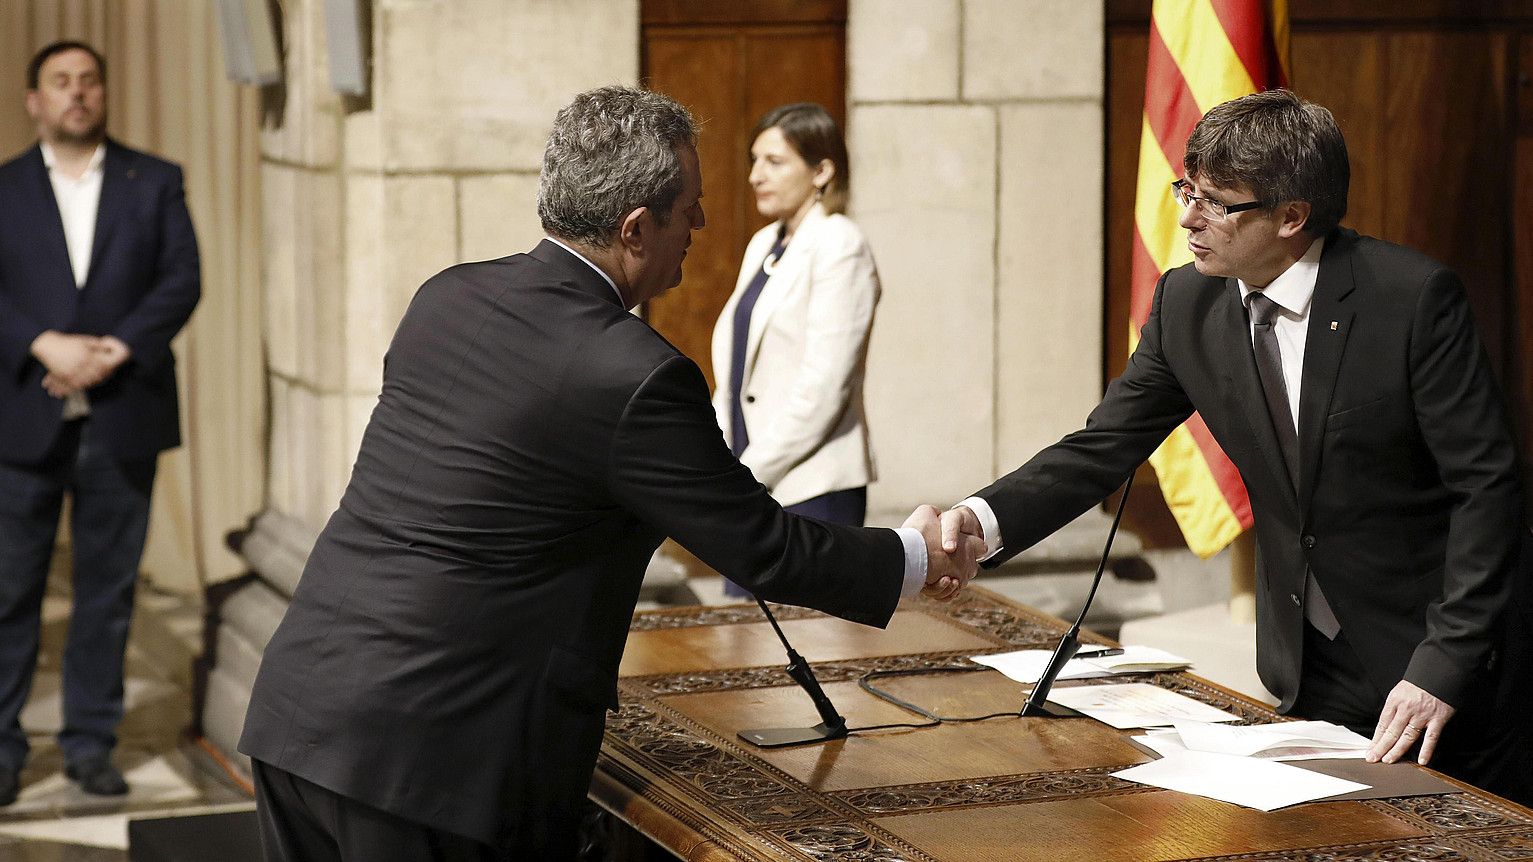 Joaquim Forn, Barne kontseilari kargua hartzen Carles Puigdemont presidentearekin, atzo. ANDREU DALMAU / EFE.